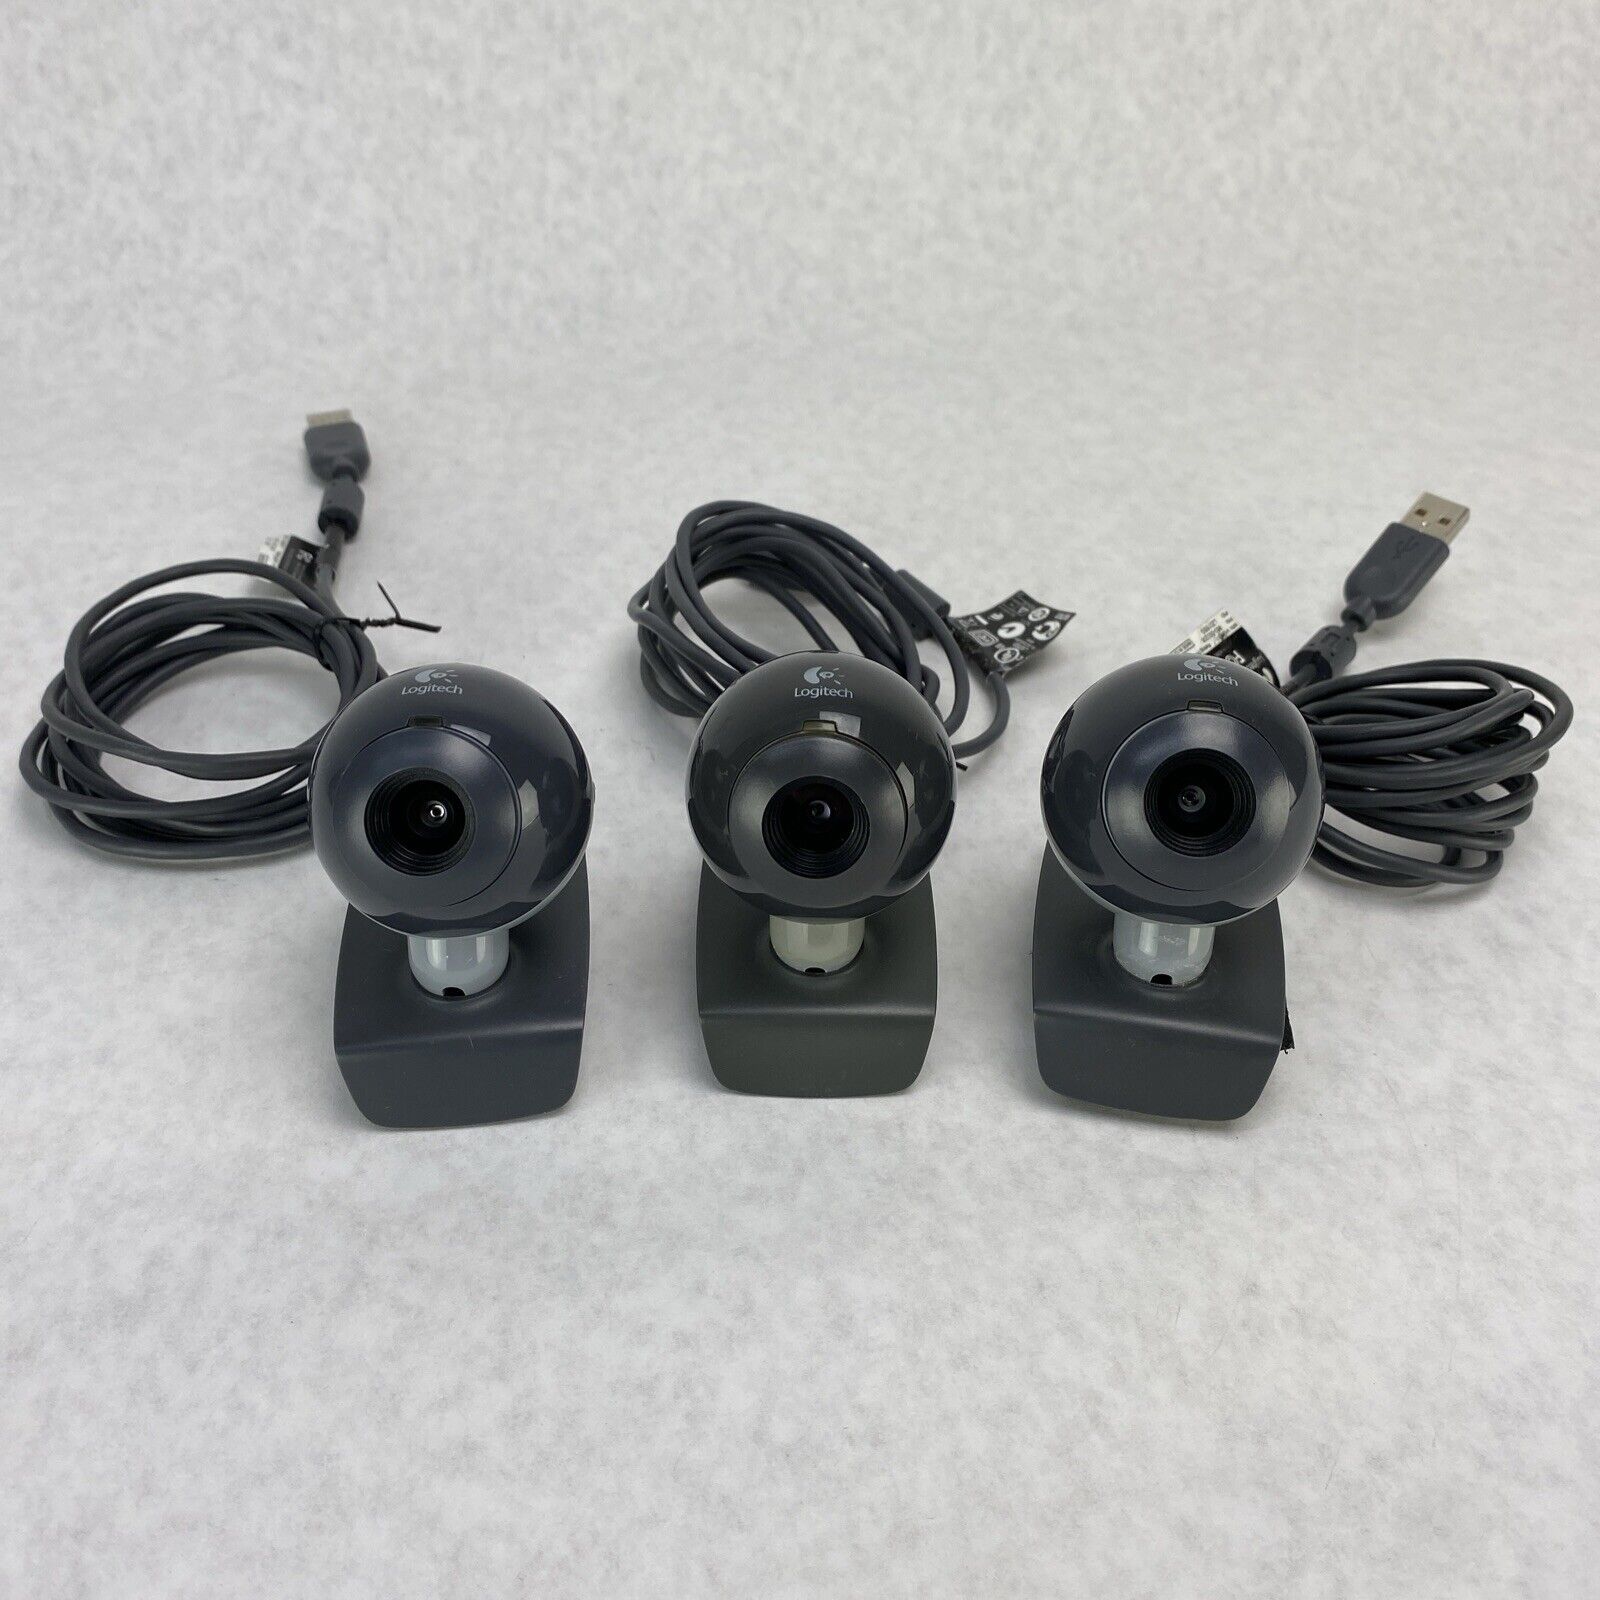 Lot of 3 Logitech V-U0011 Generic Webcam For Home or Office 860-000206